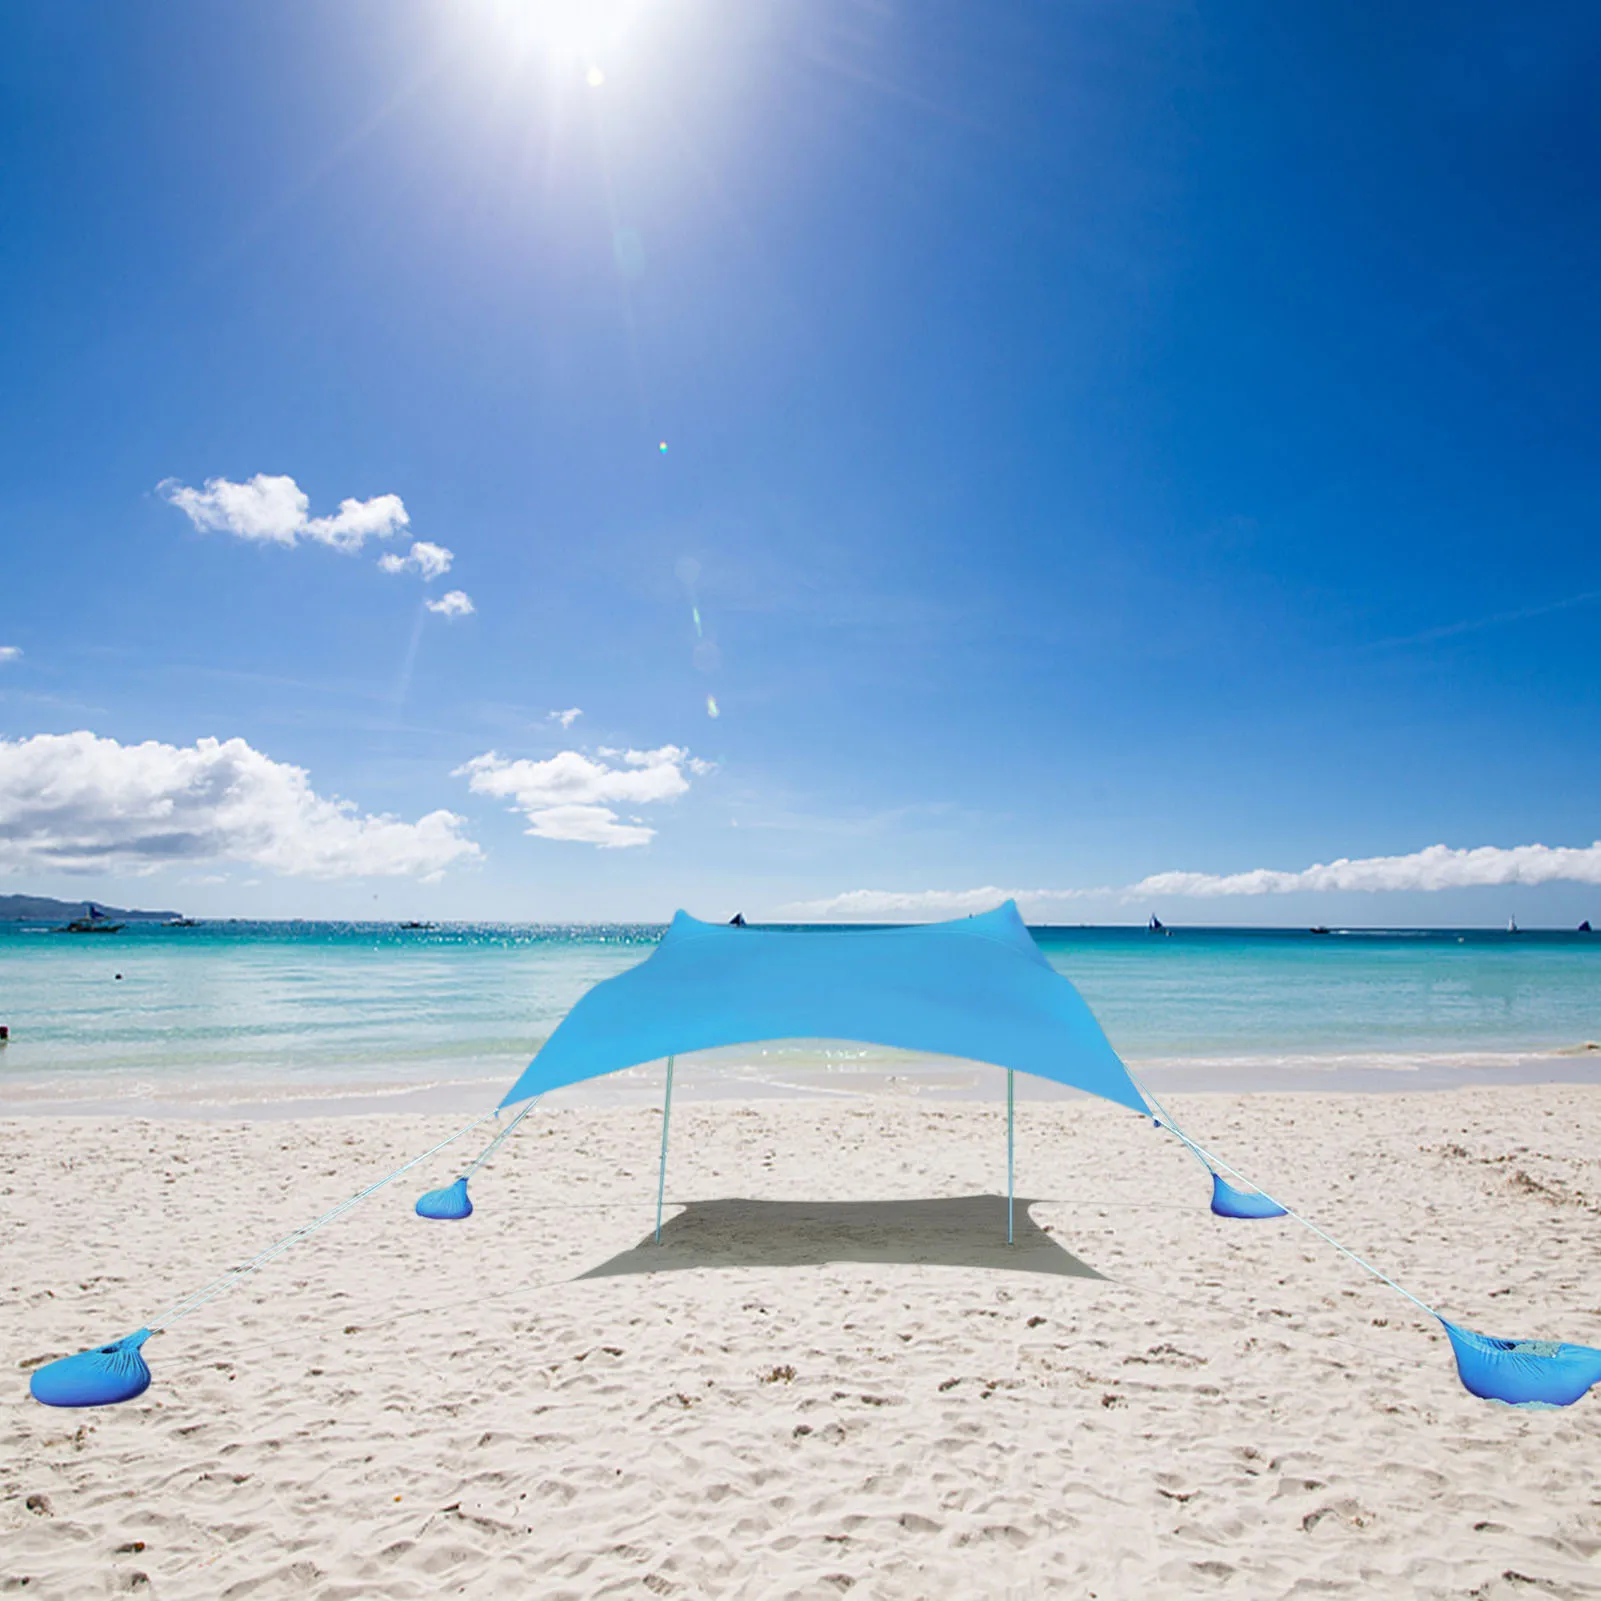 구매 가족 해변 양산 경량 차양 텐트 샌드백 앵커 4 무료 페그 UPF50 + UV 대형 방수 휴대용 캐노피